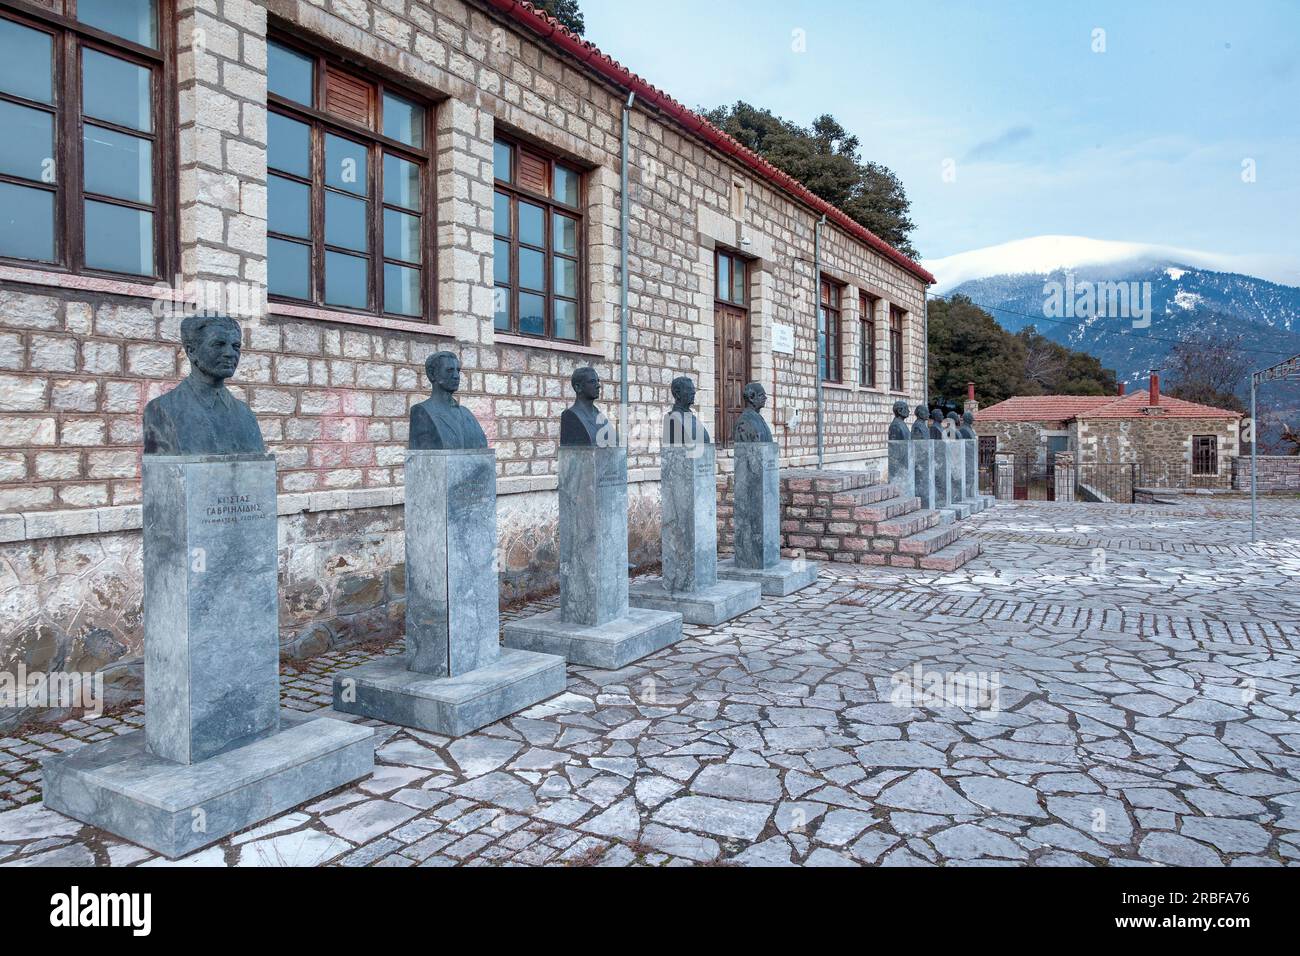 Musée national de la résistance à Viniani, Grèce, Europe. En face, il y a des bustes de figures importantes du mouvement partisan grec pendant la Seconde Guerre mondiale Banque D'Images